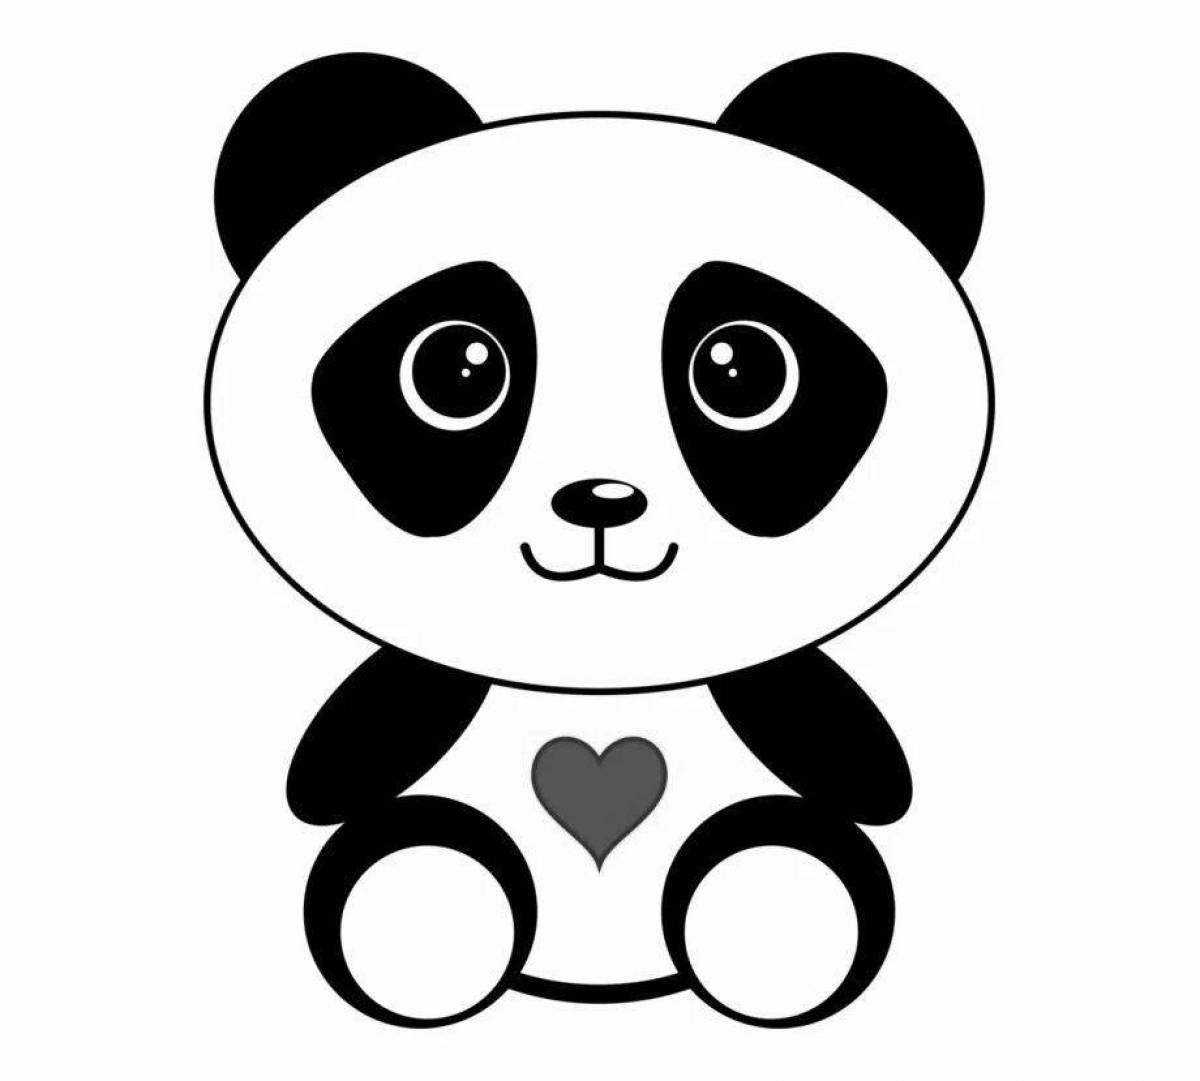 Coloring page naughty cute panda